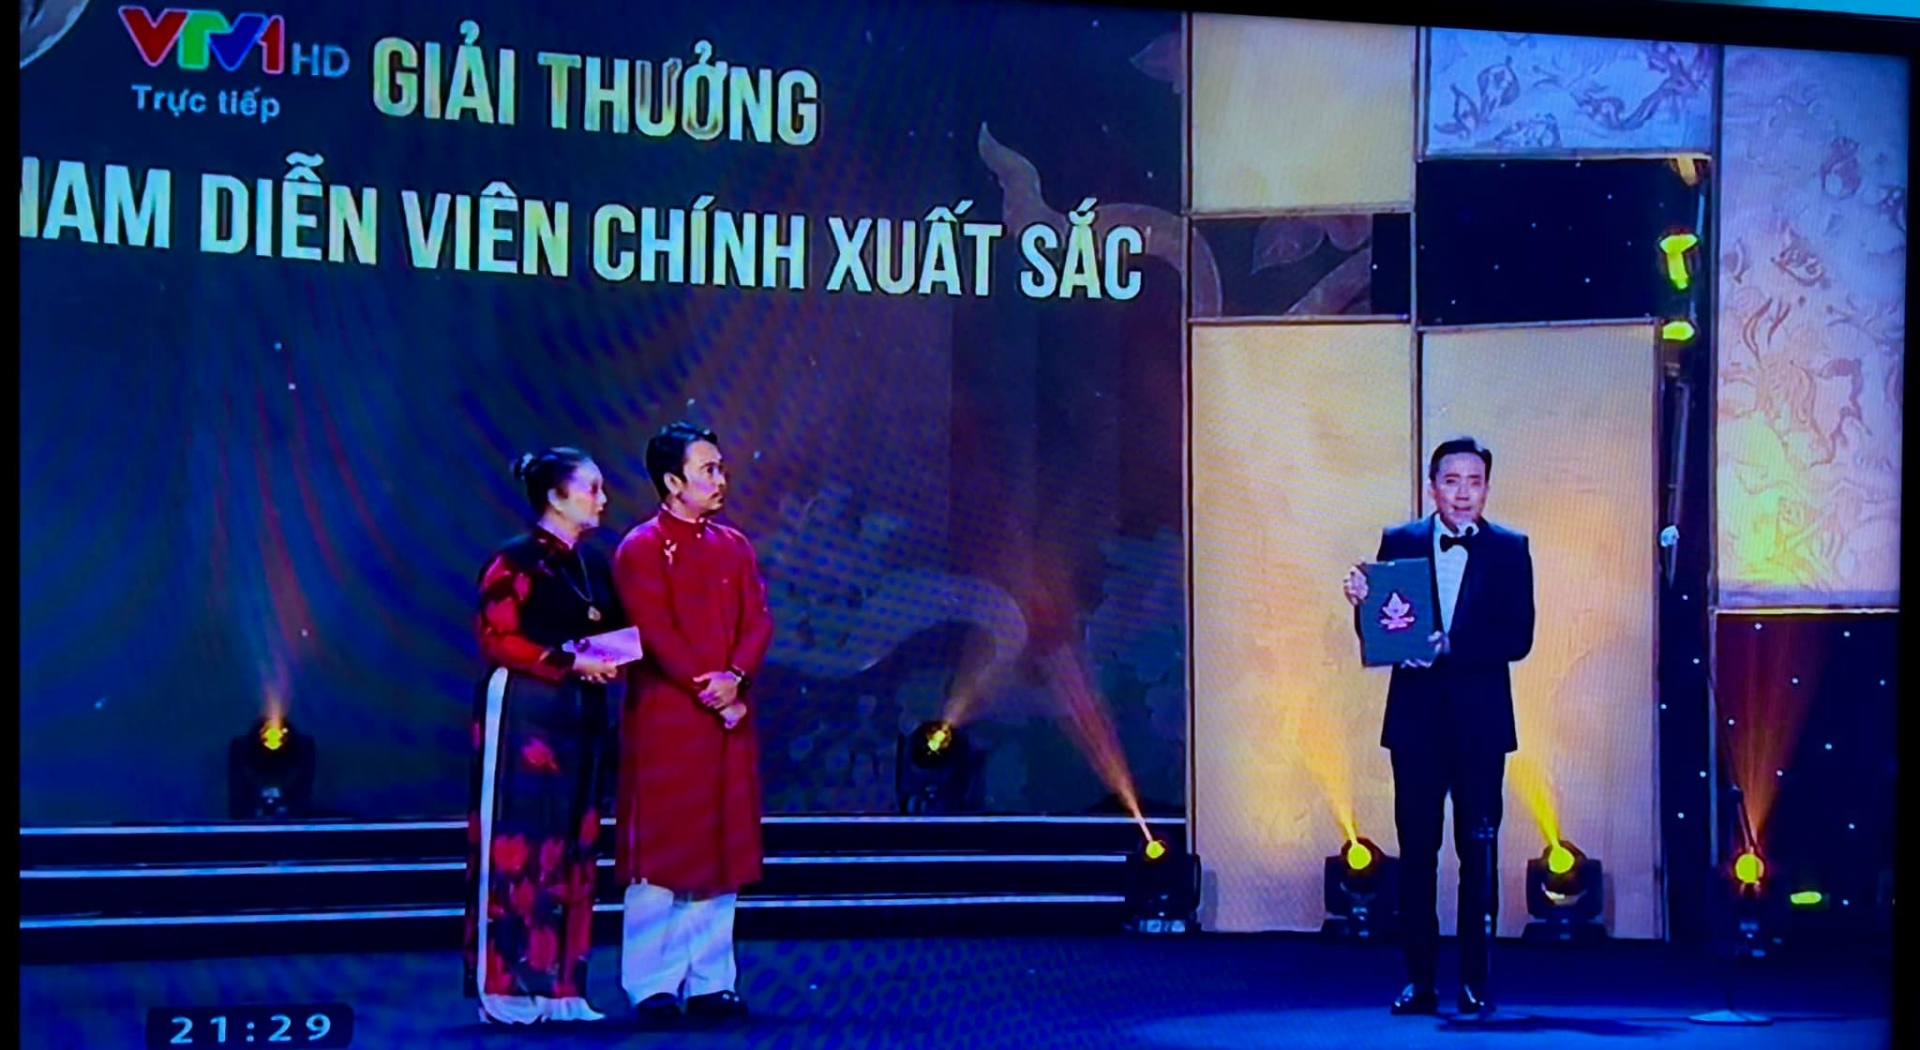 Tuấn Trần đoạt giải 'Nam diễn viên chính xuất sắc nhất' tại Liên hoan phim Việt Nam 2021.